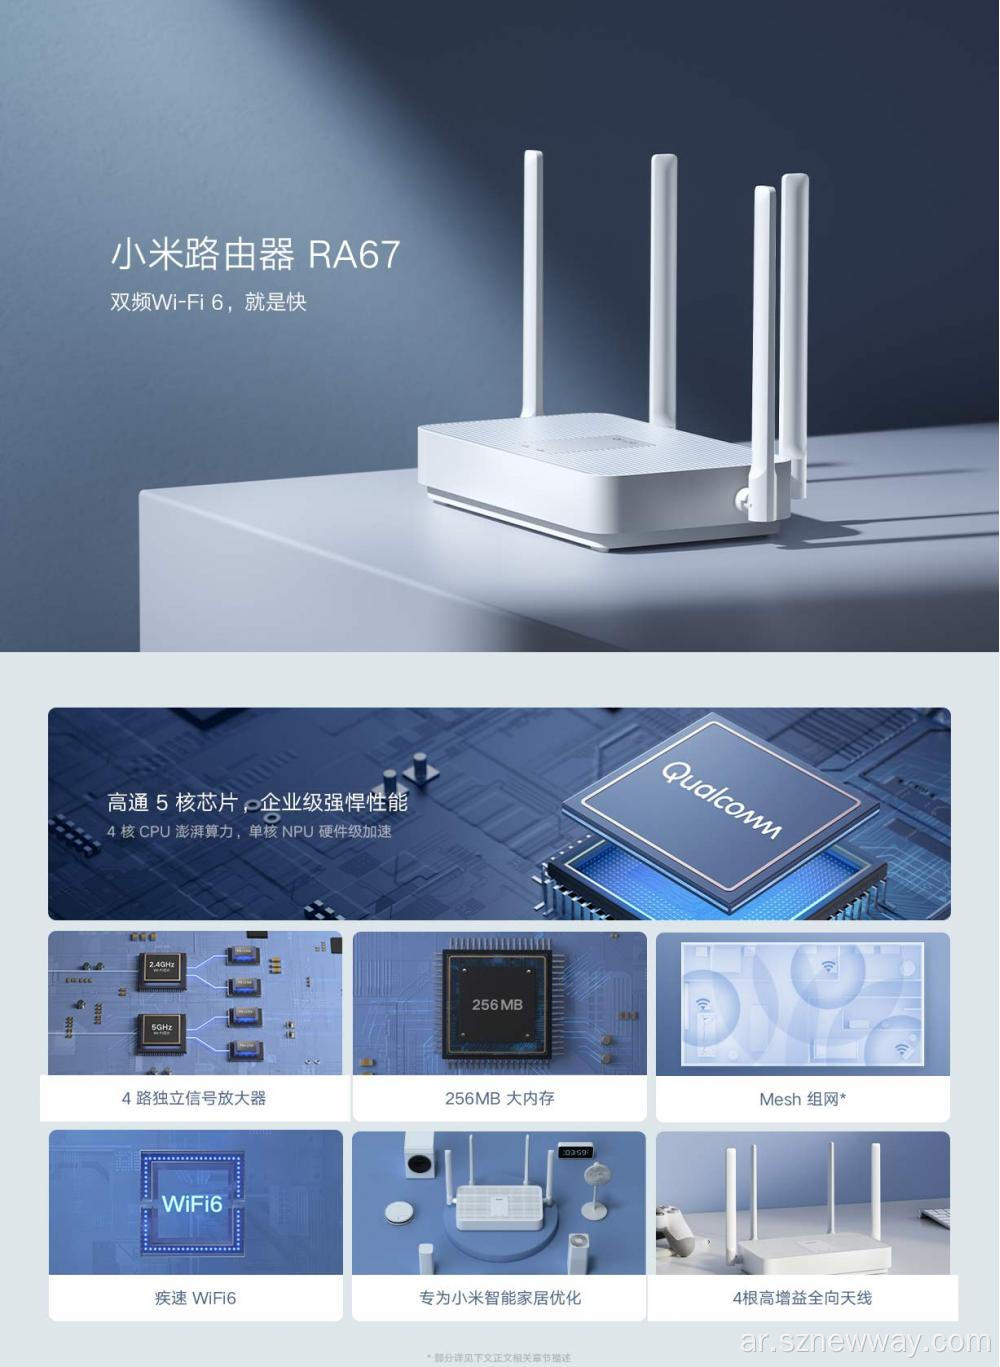 Xiaomi WiFi Mi Router RA67